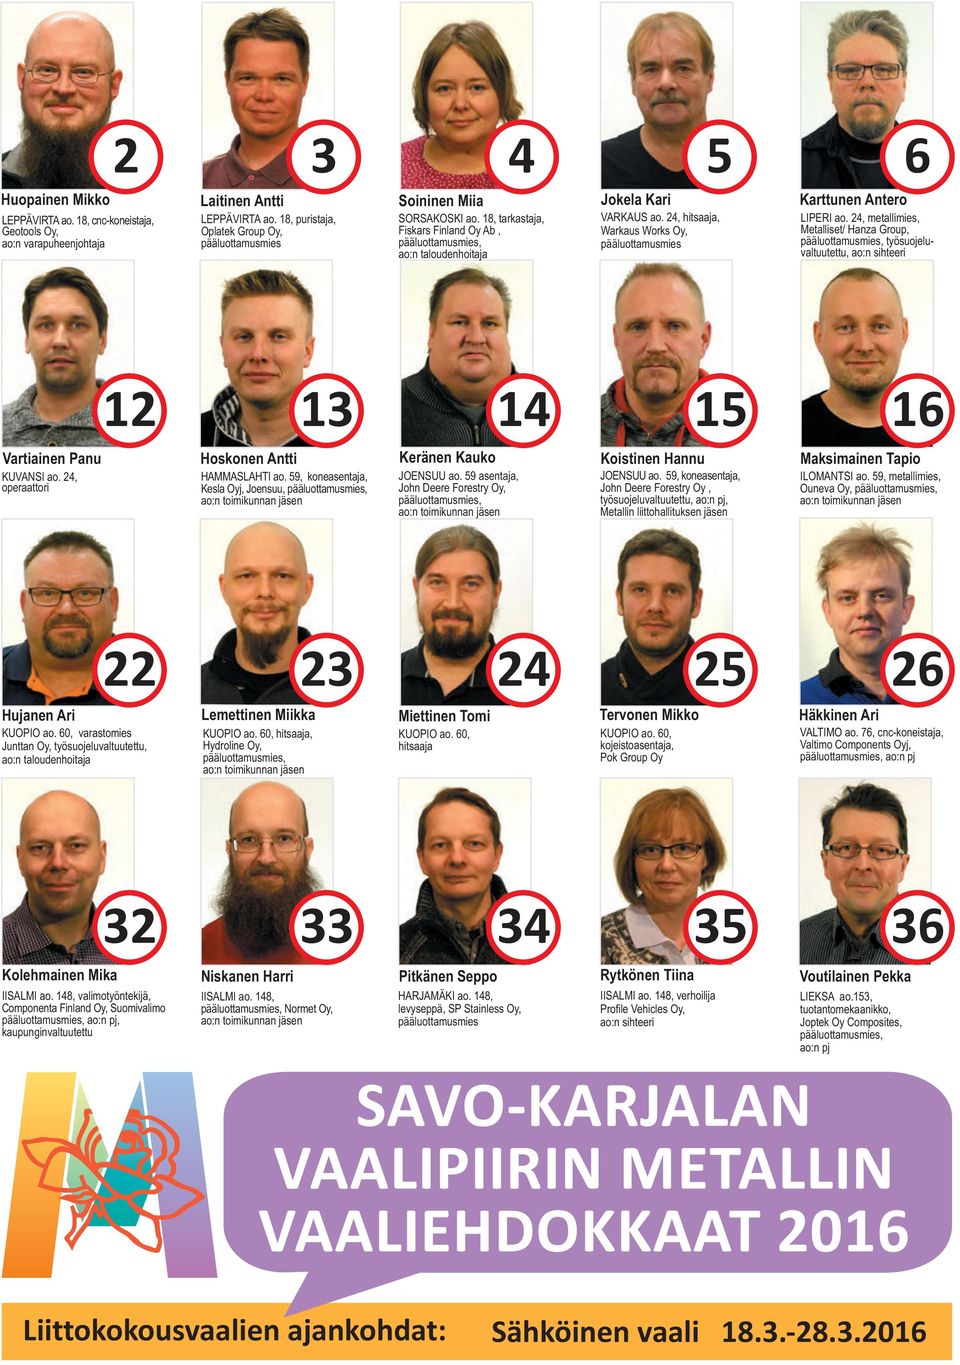 24, hitsaaja, Warkaus Works Oy, pääluottamusmies Karttunen Antero LIPERI ao.